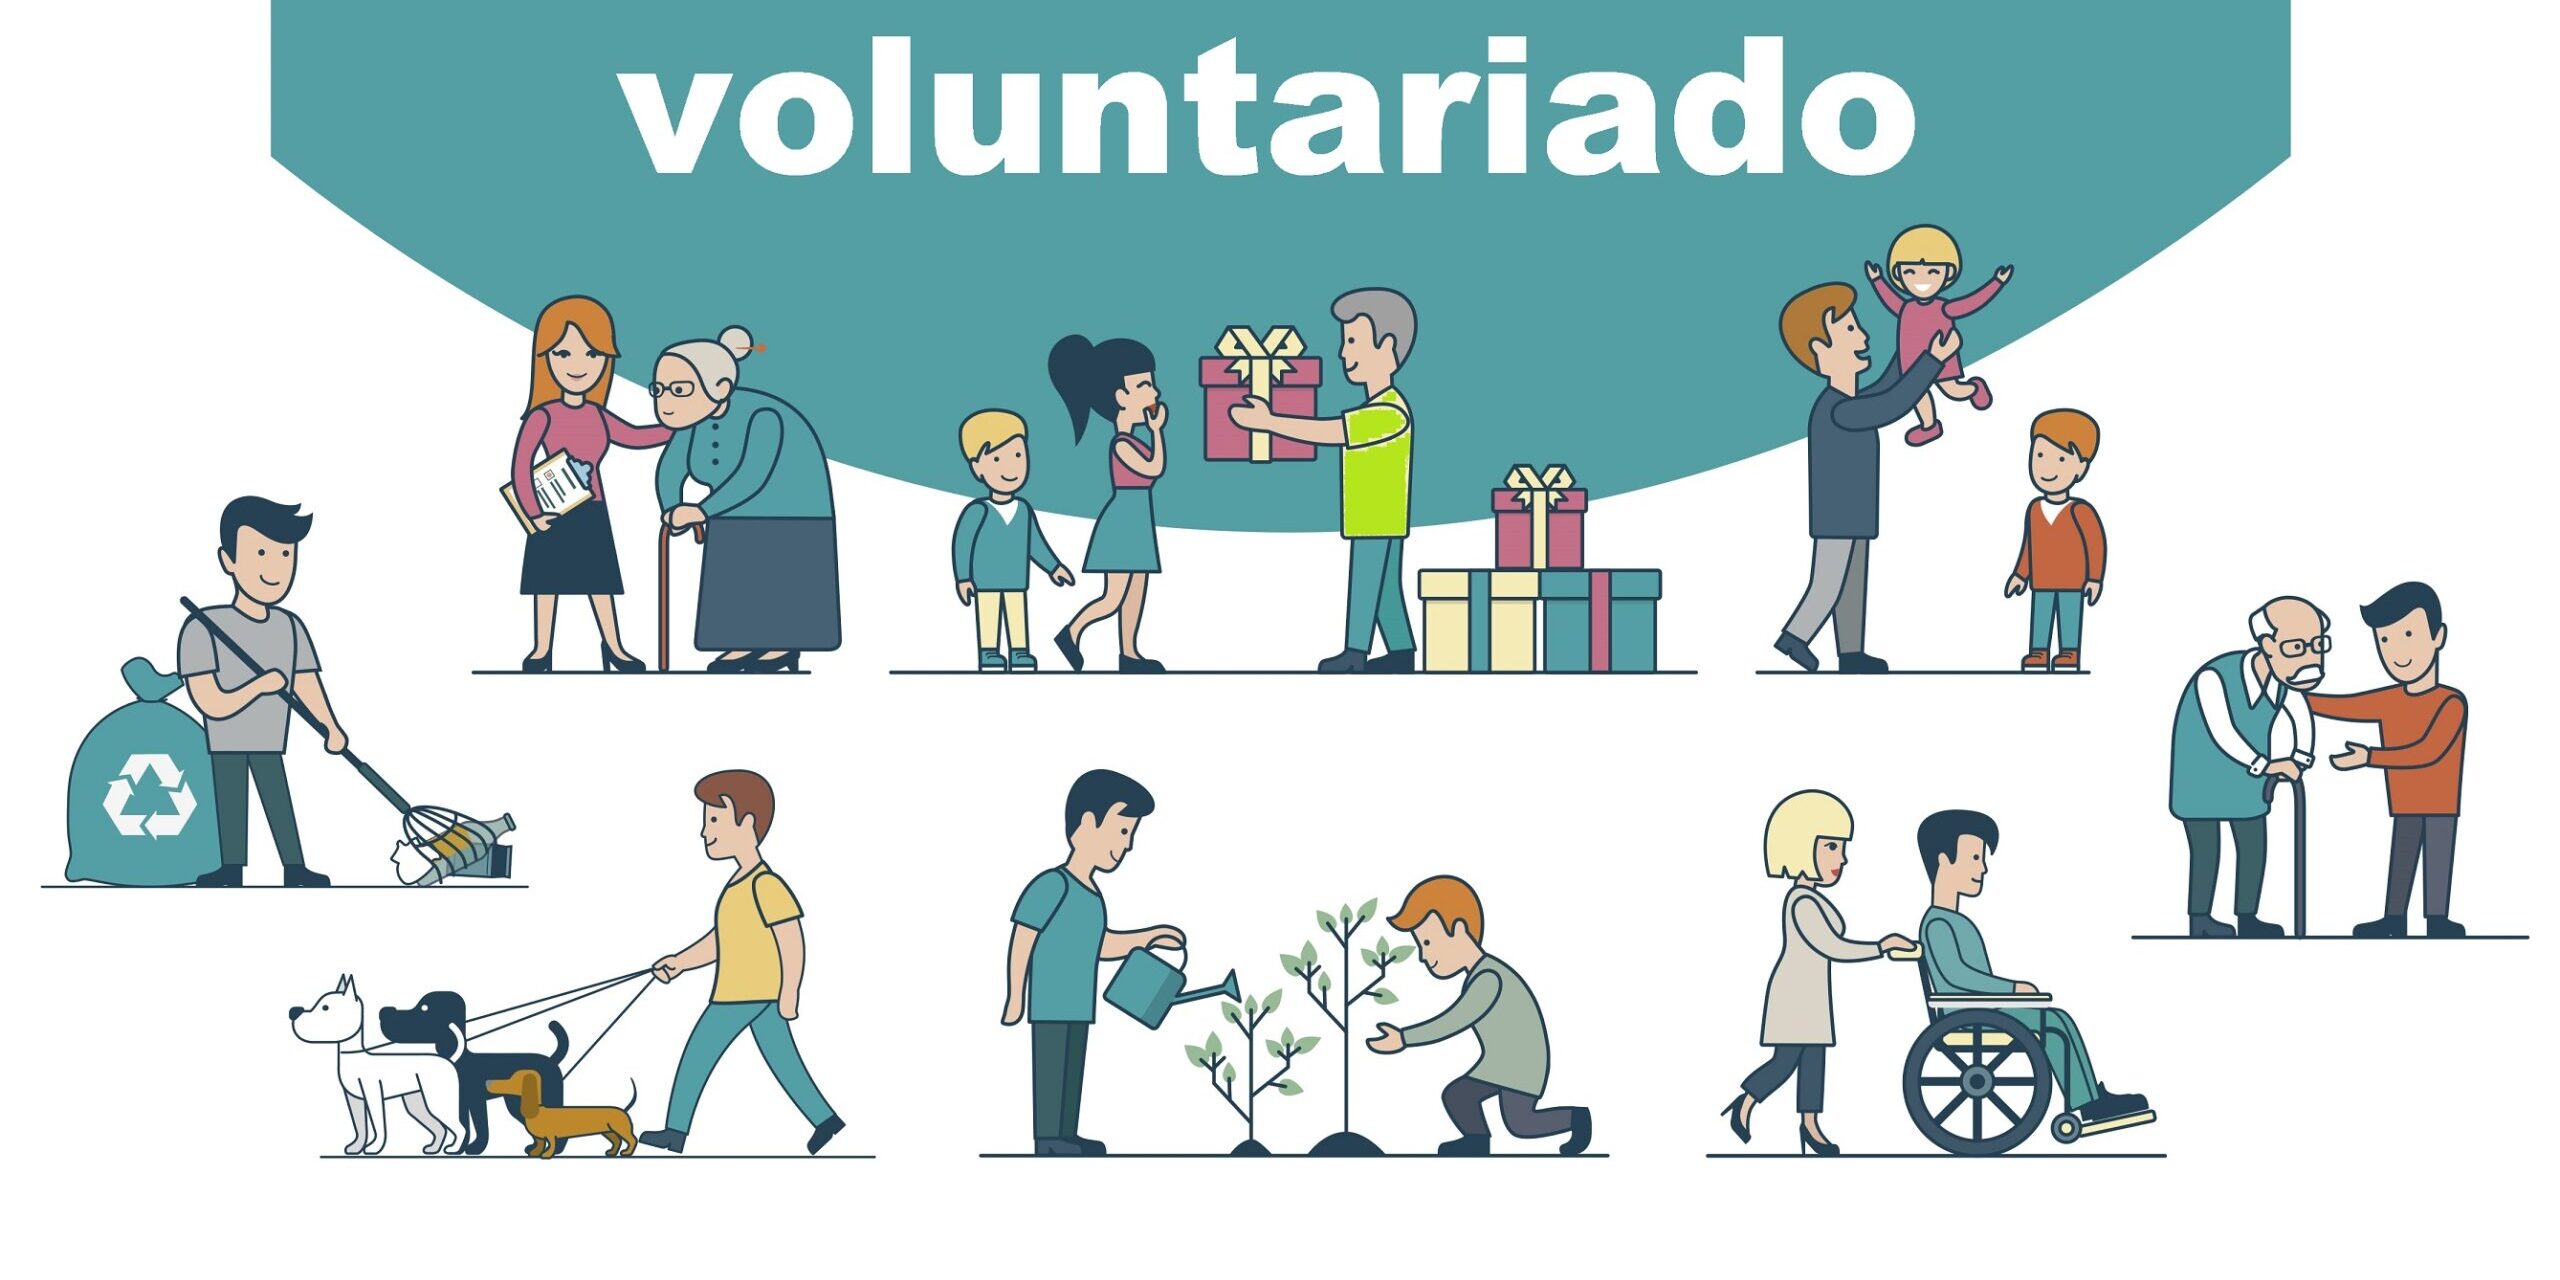 Participación de los adultos mayores a través del voluntariado